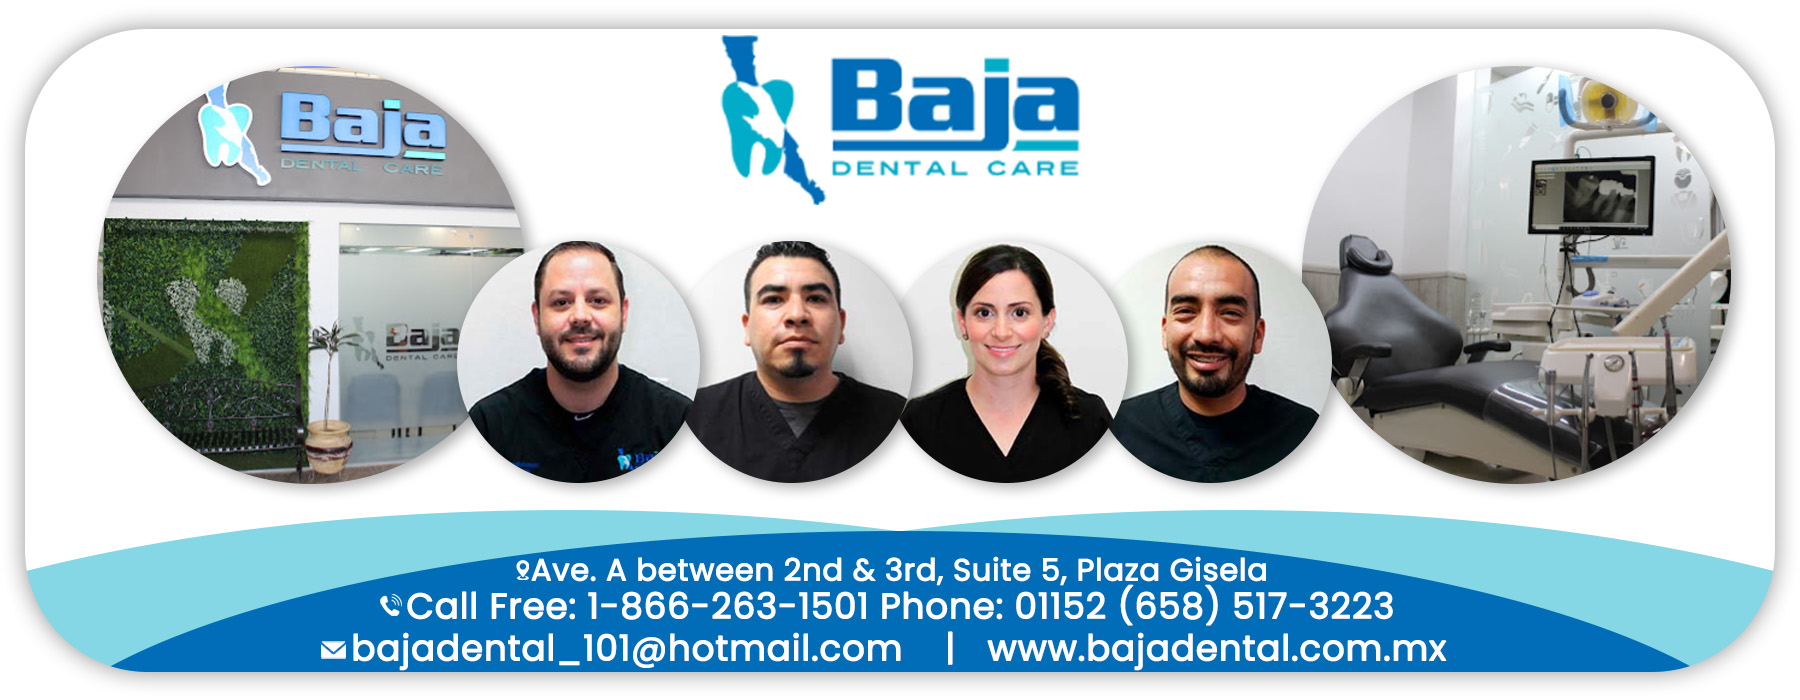  Baja Dental Care